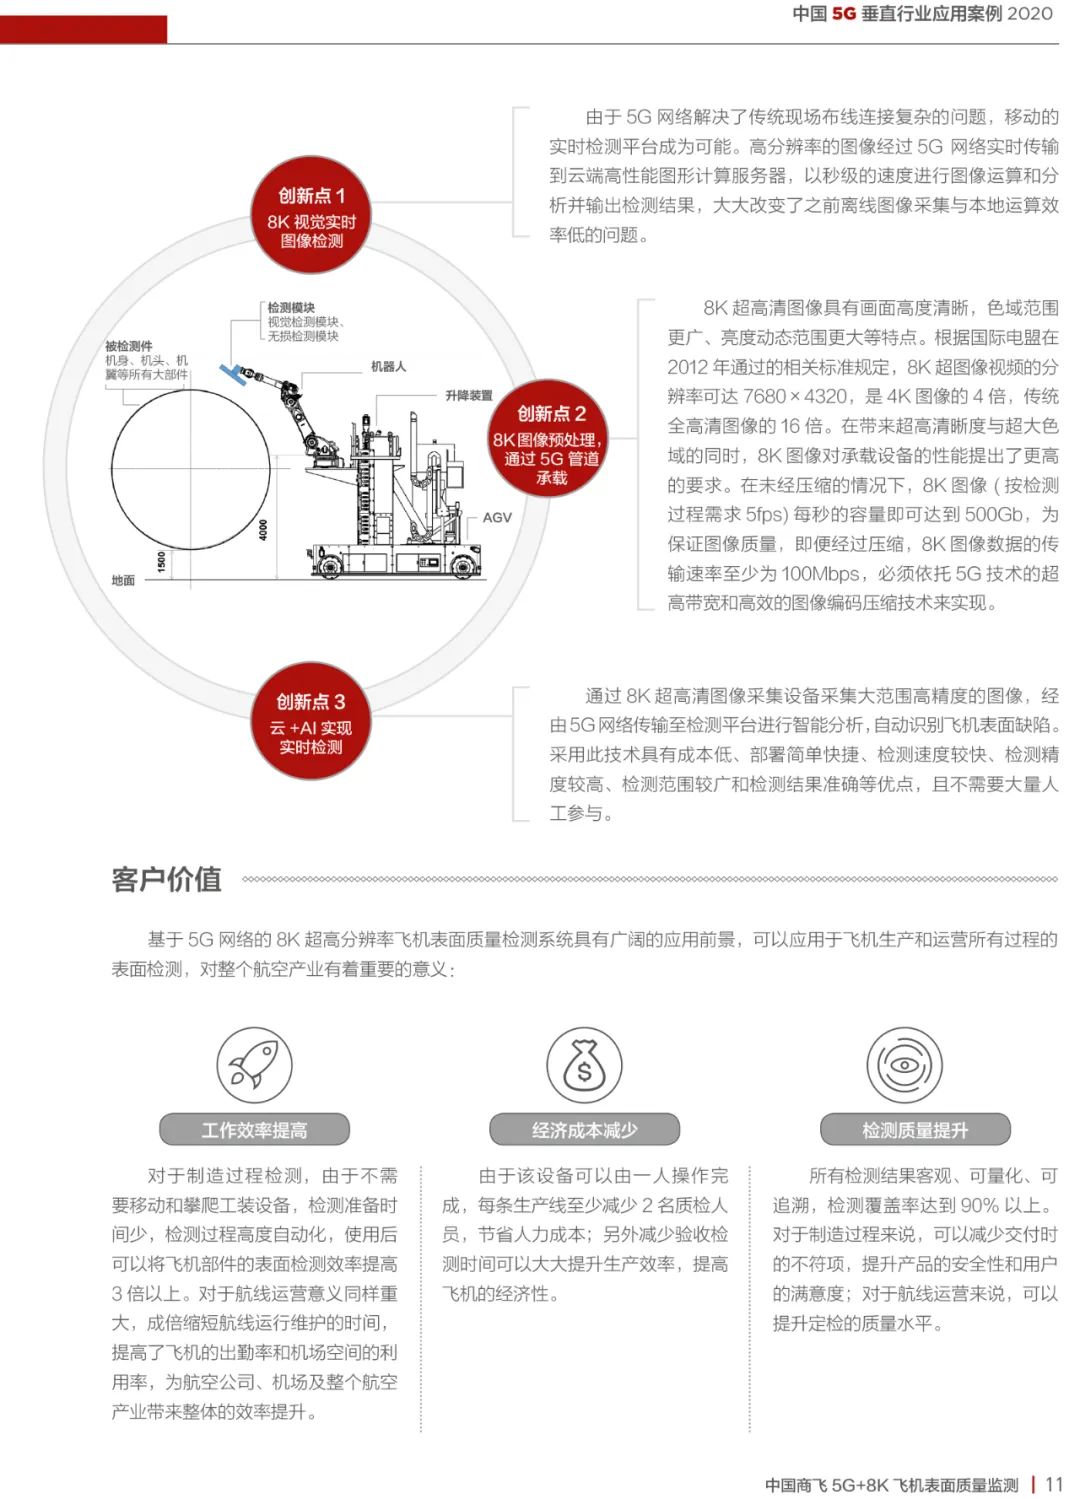 2020中国5G垂直行业应用案例